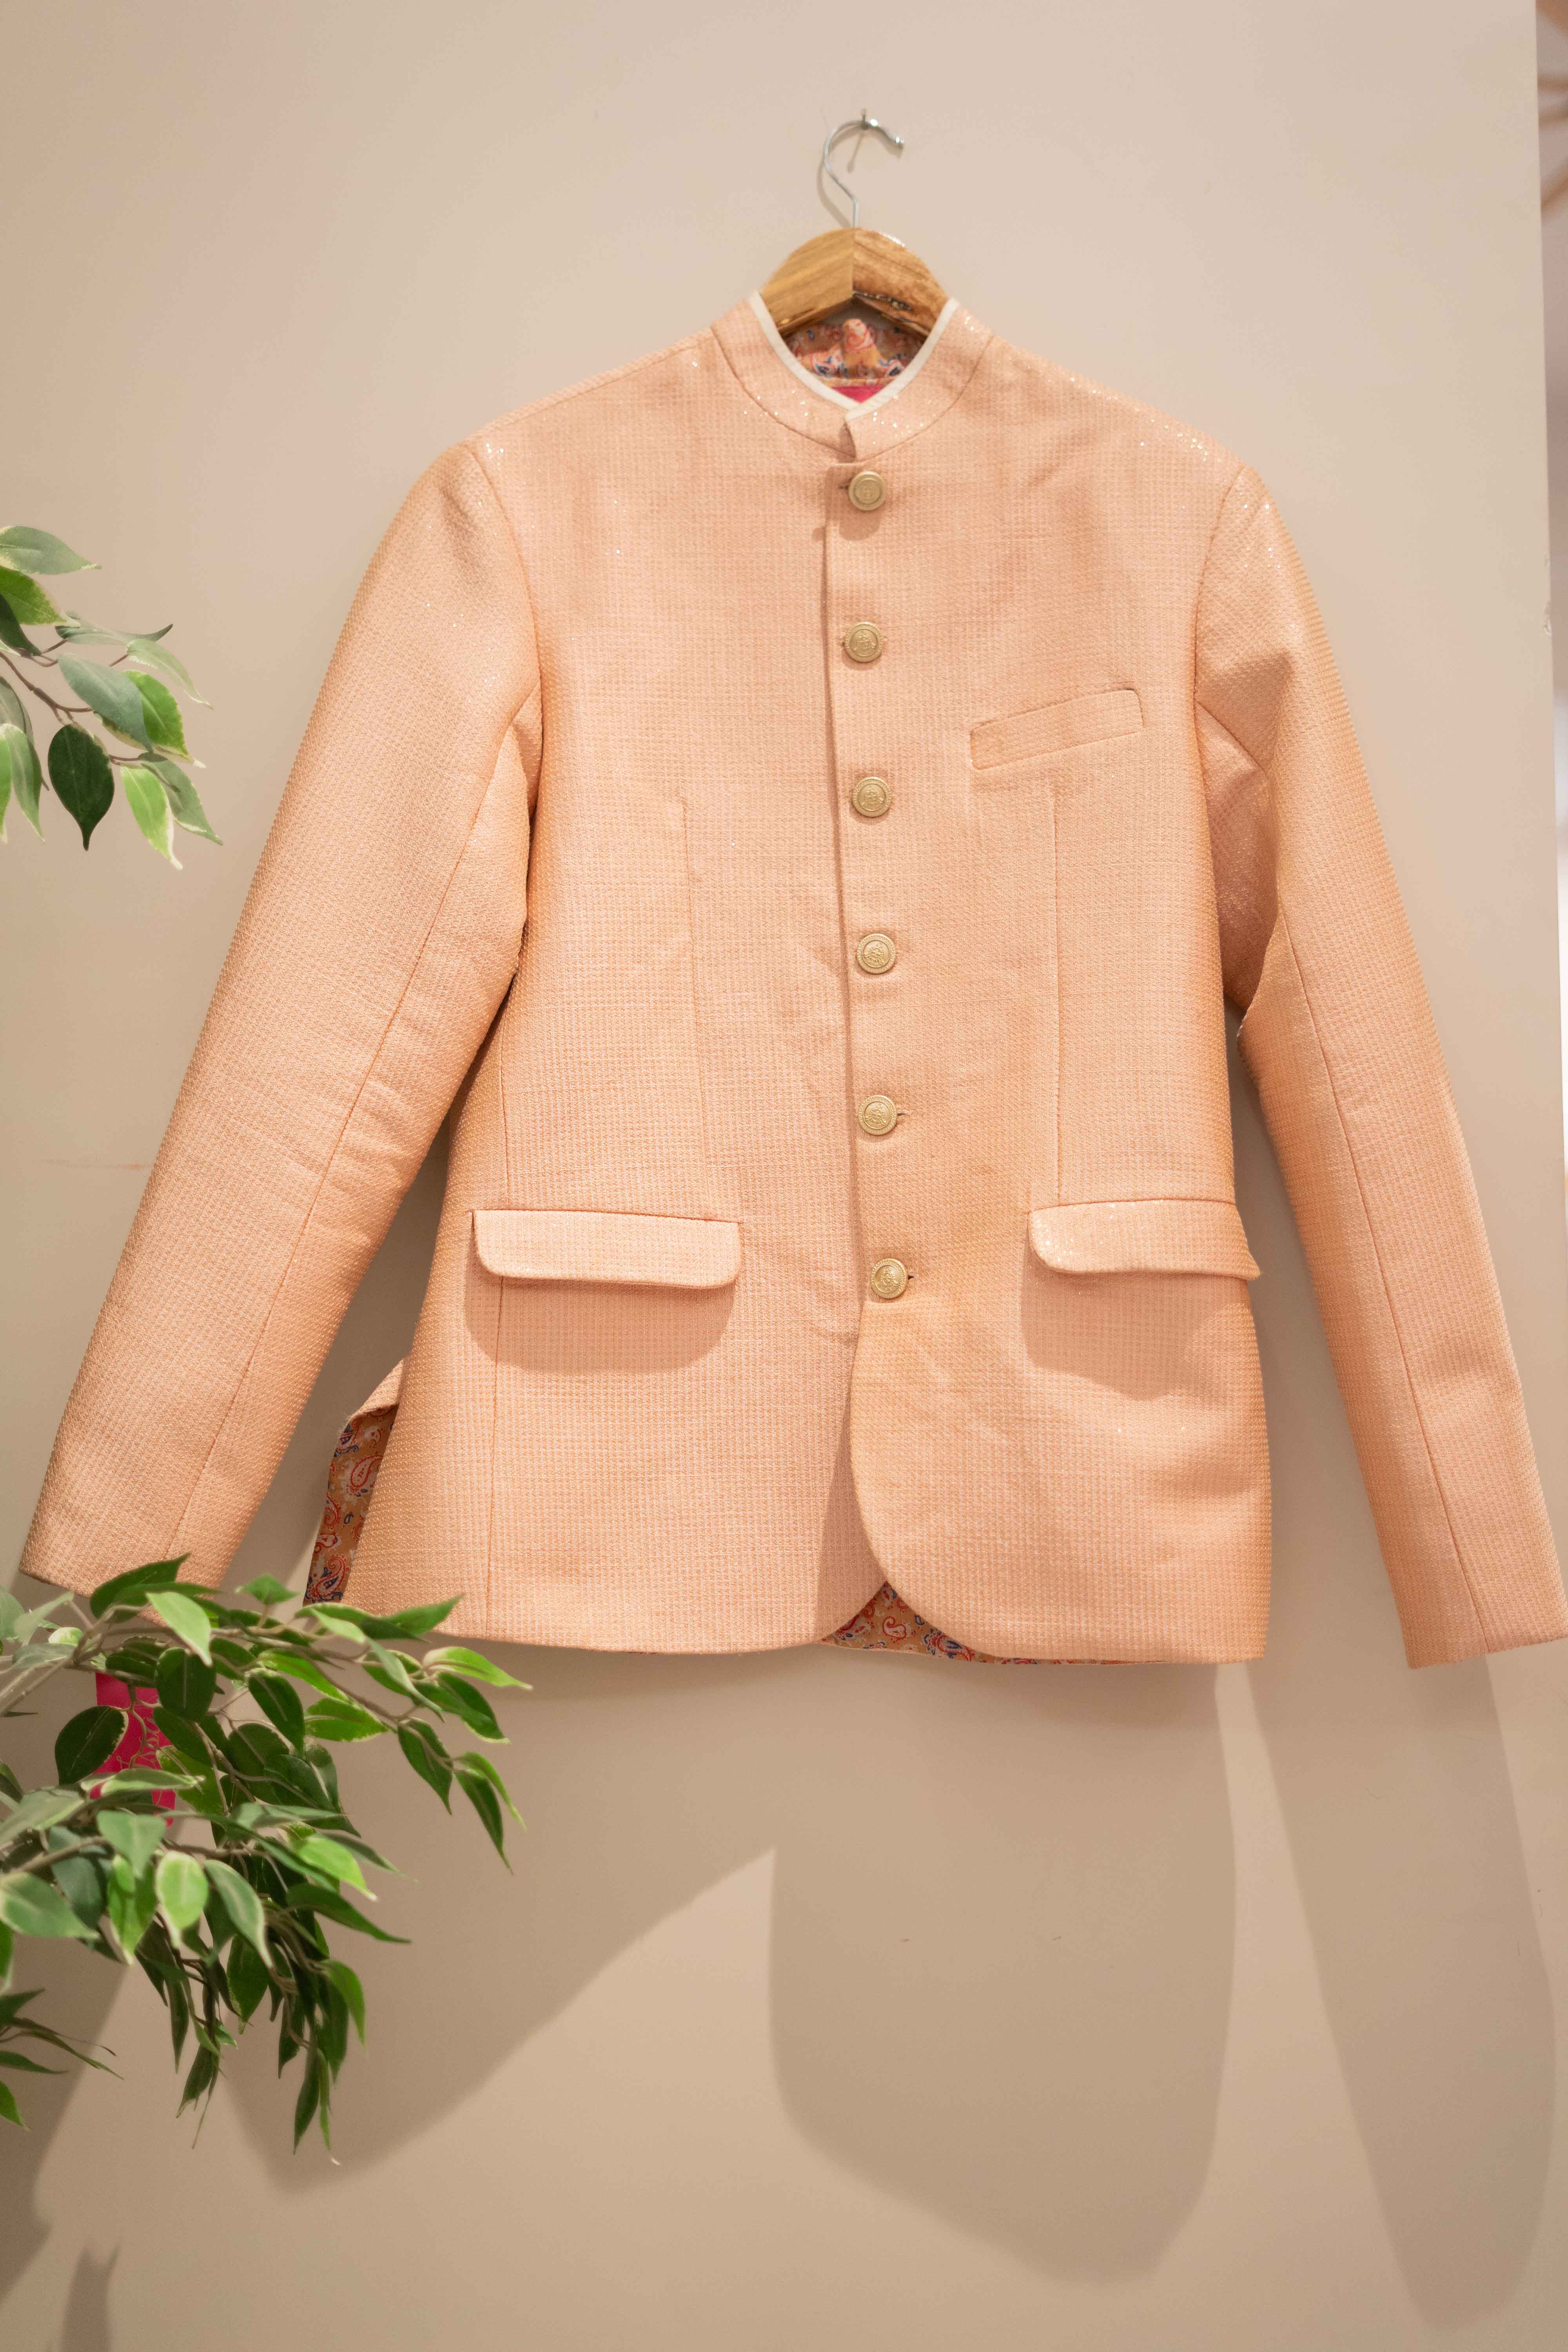 DS - peach jacket